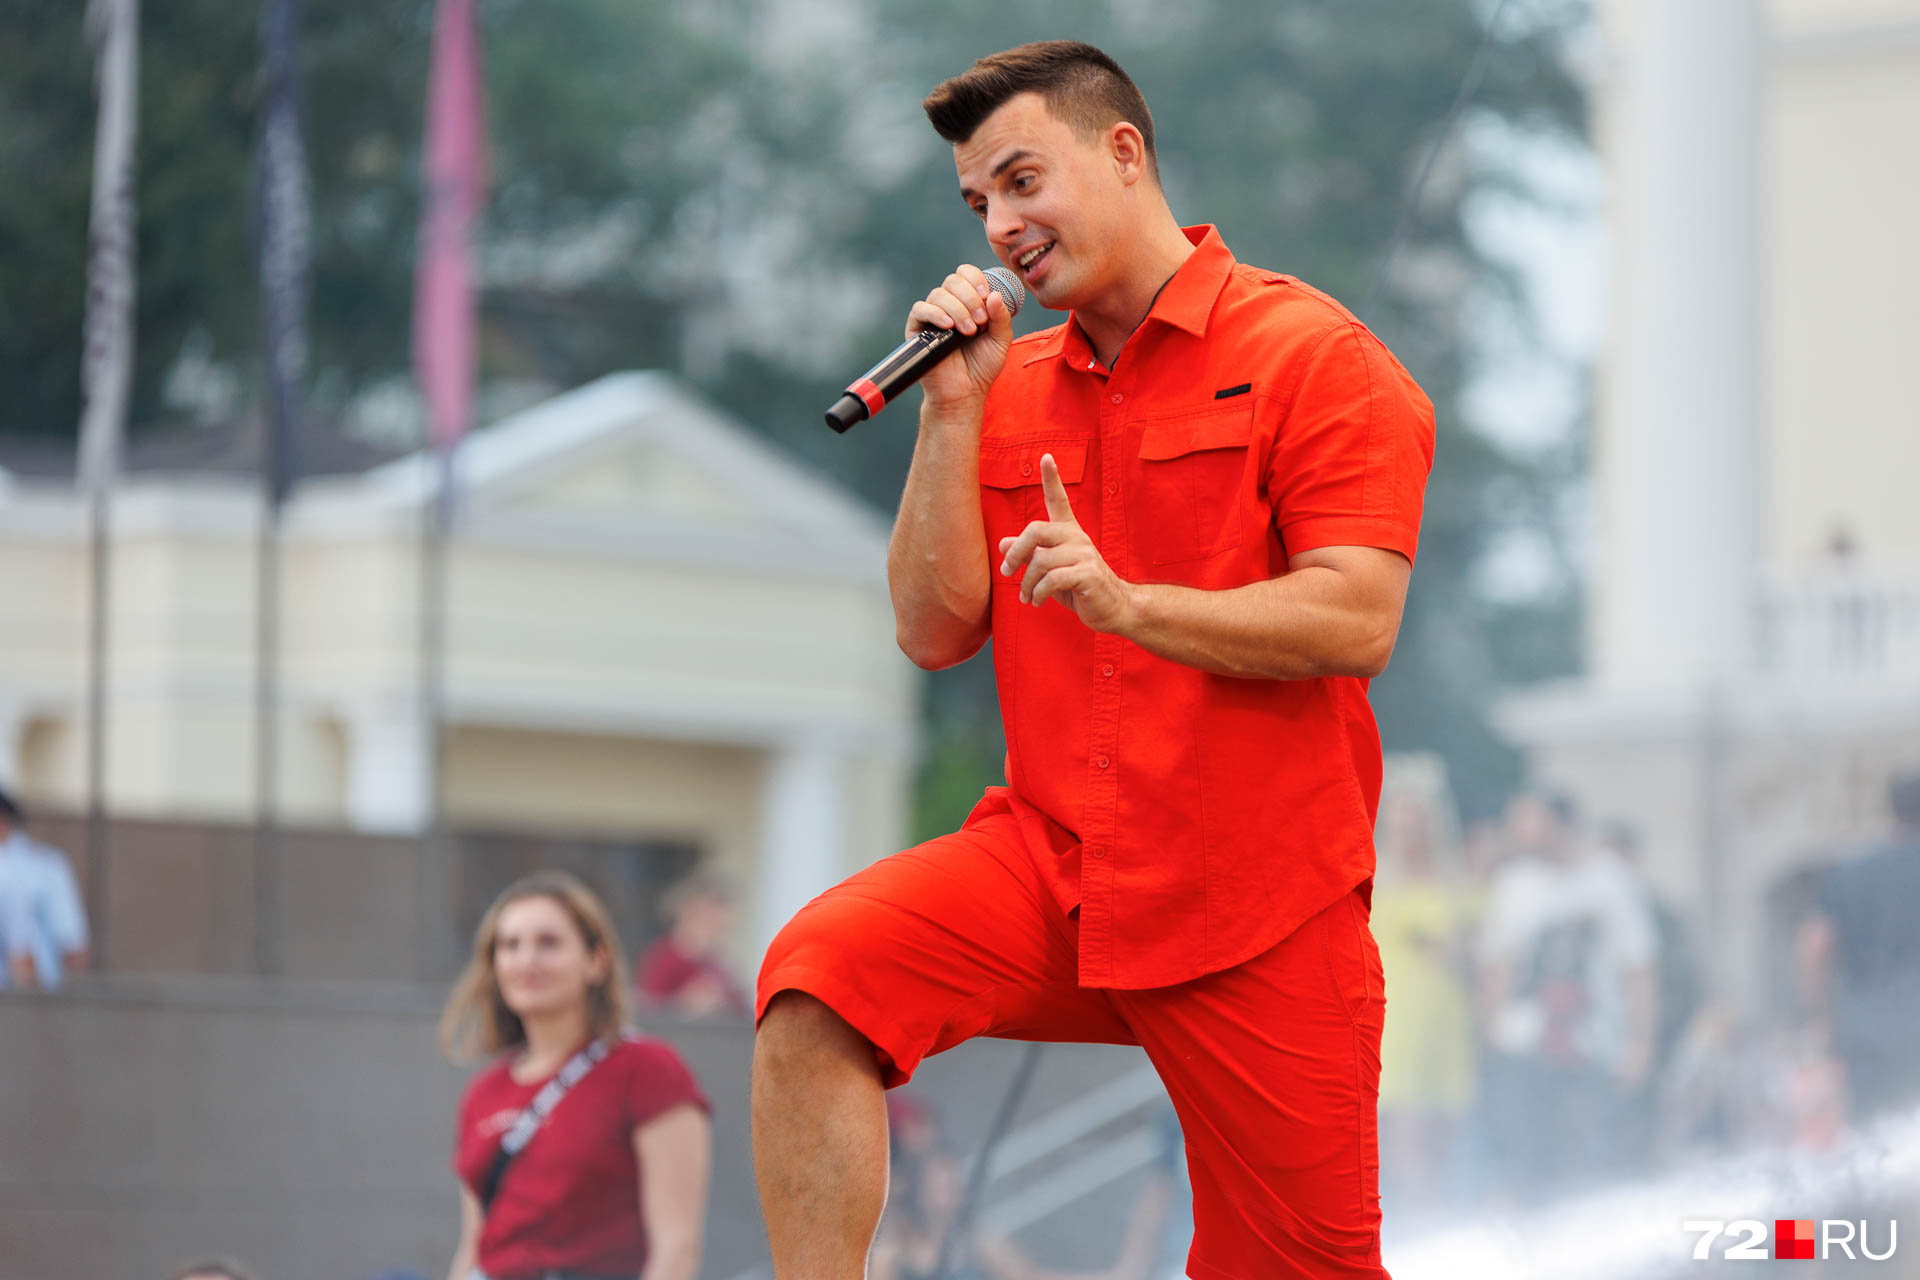 Согласно открытым данным, Кирилл Туриченко стал солистом российской поп-группы «Иванушки International» с 2013 года